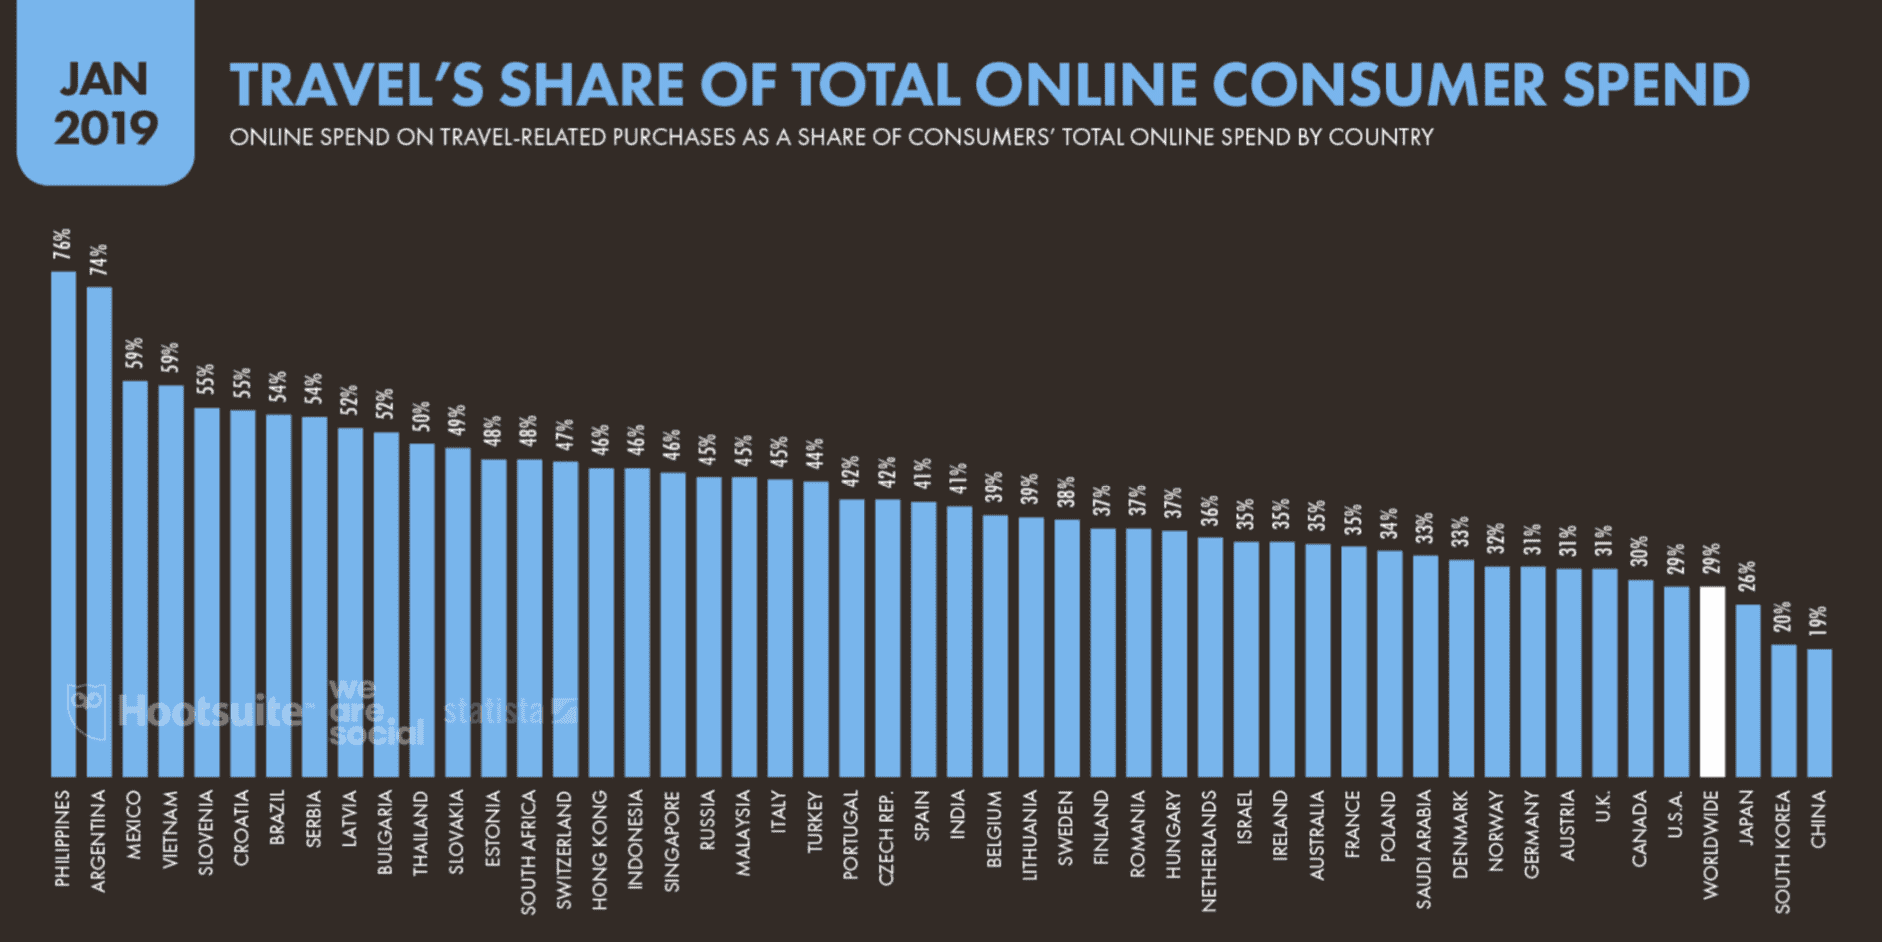 La part des voyages dans les dépenses totales des consommateurs en ligne